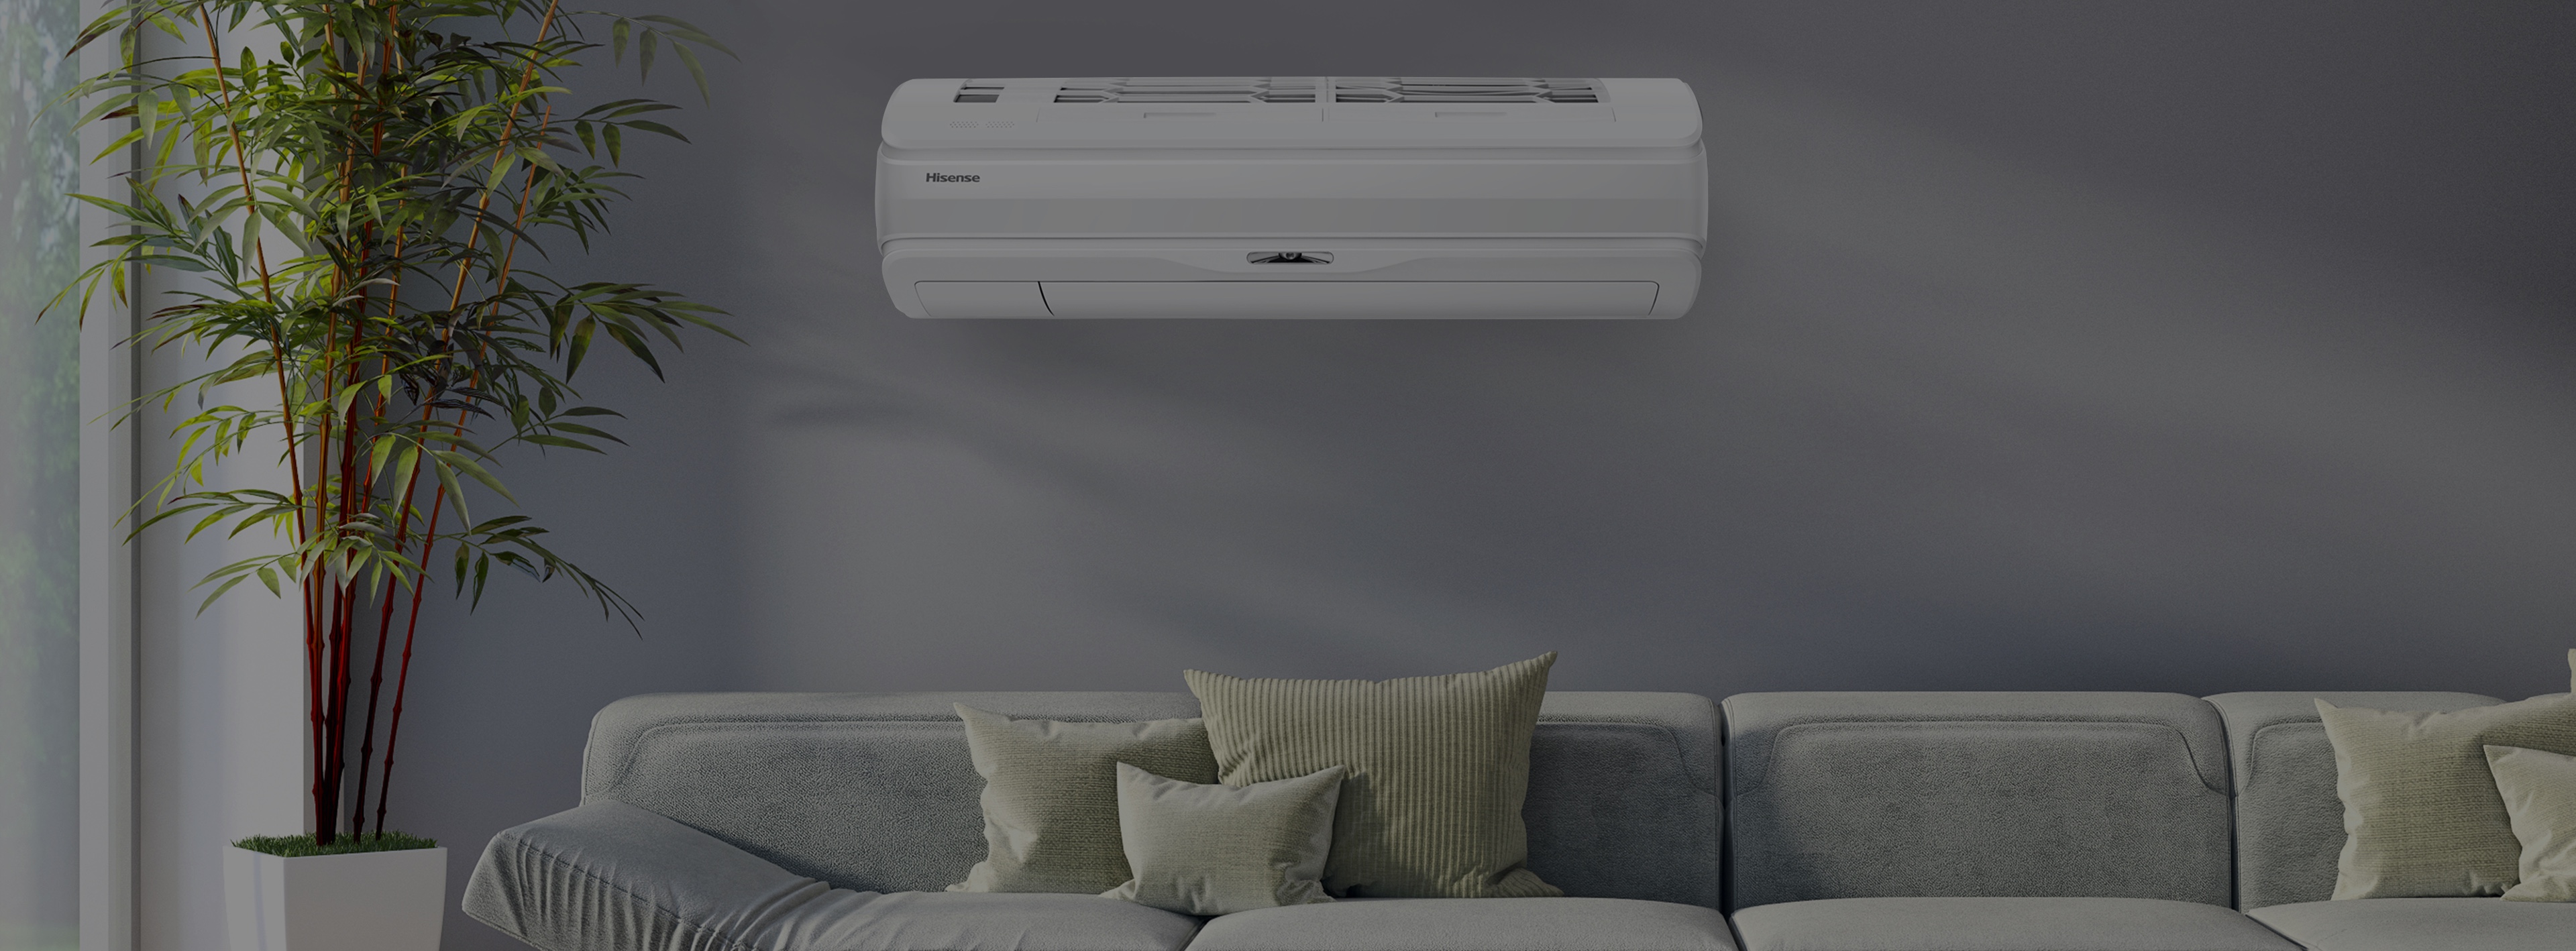 Hisense Air Conditioner 1